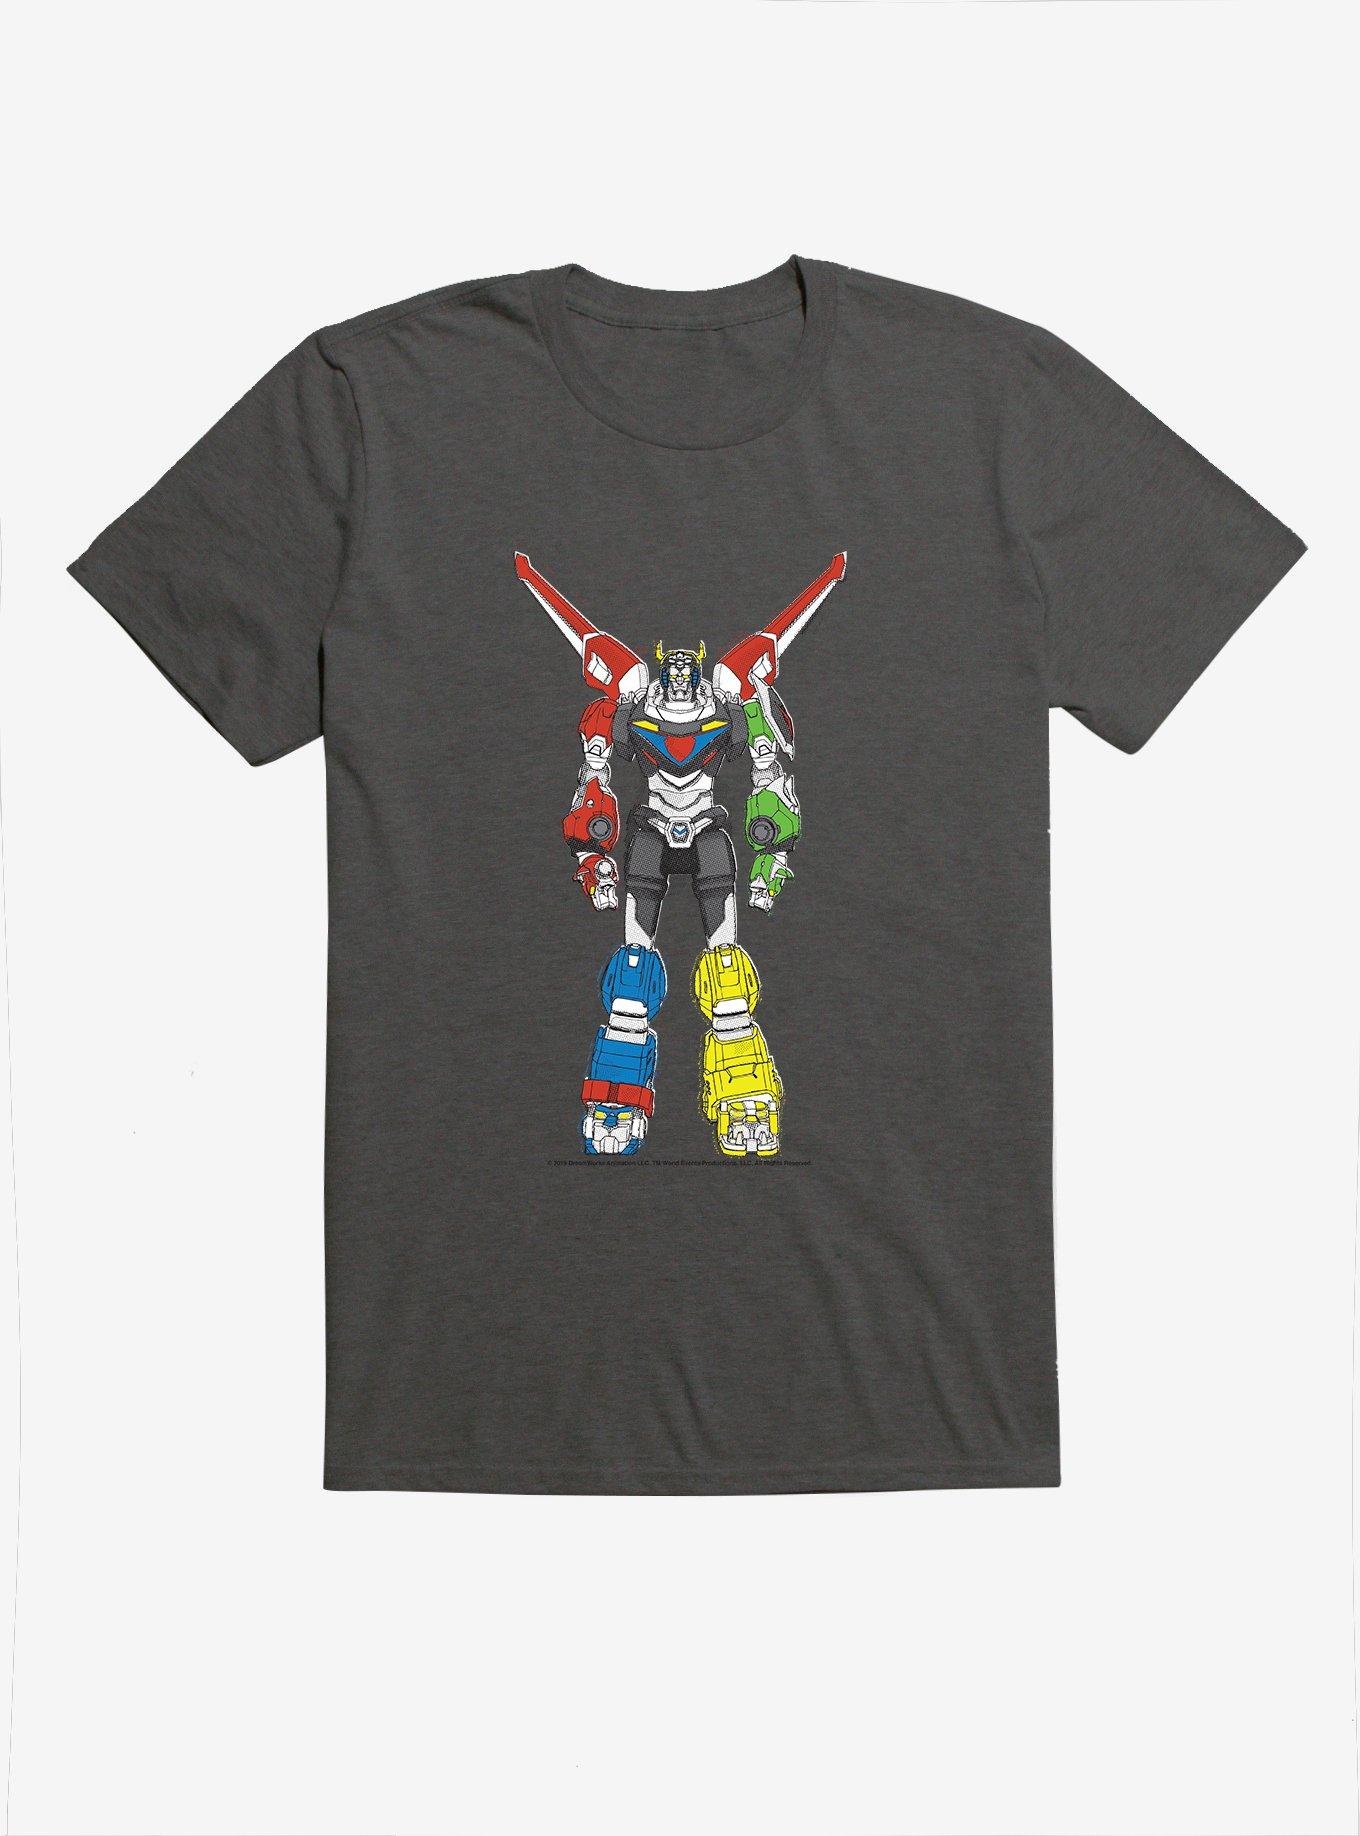 Voltron Pixel T-Shirt, CHARCOAL, hi-res